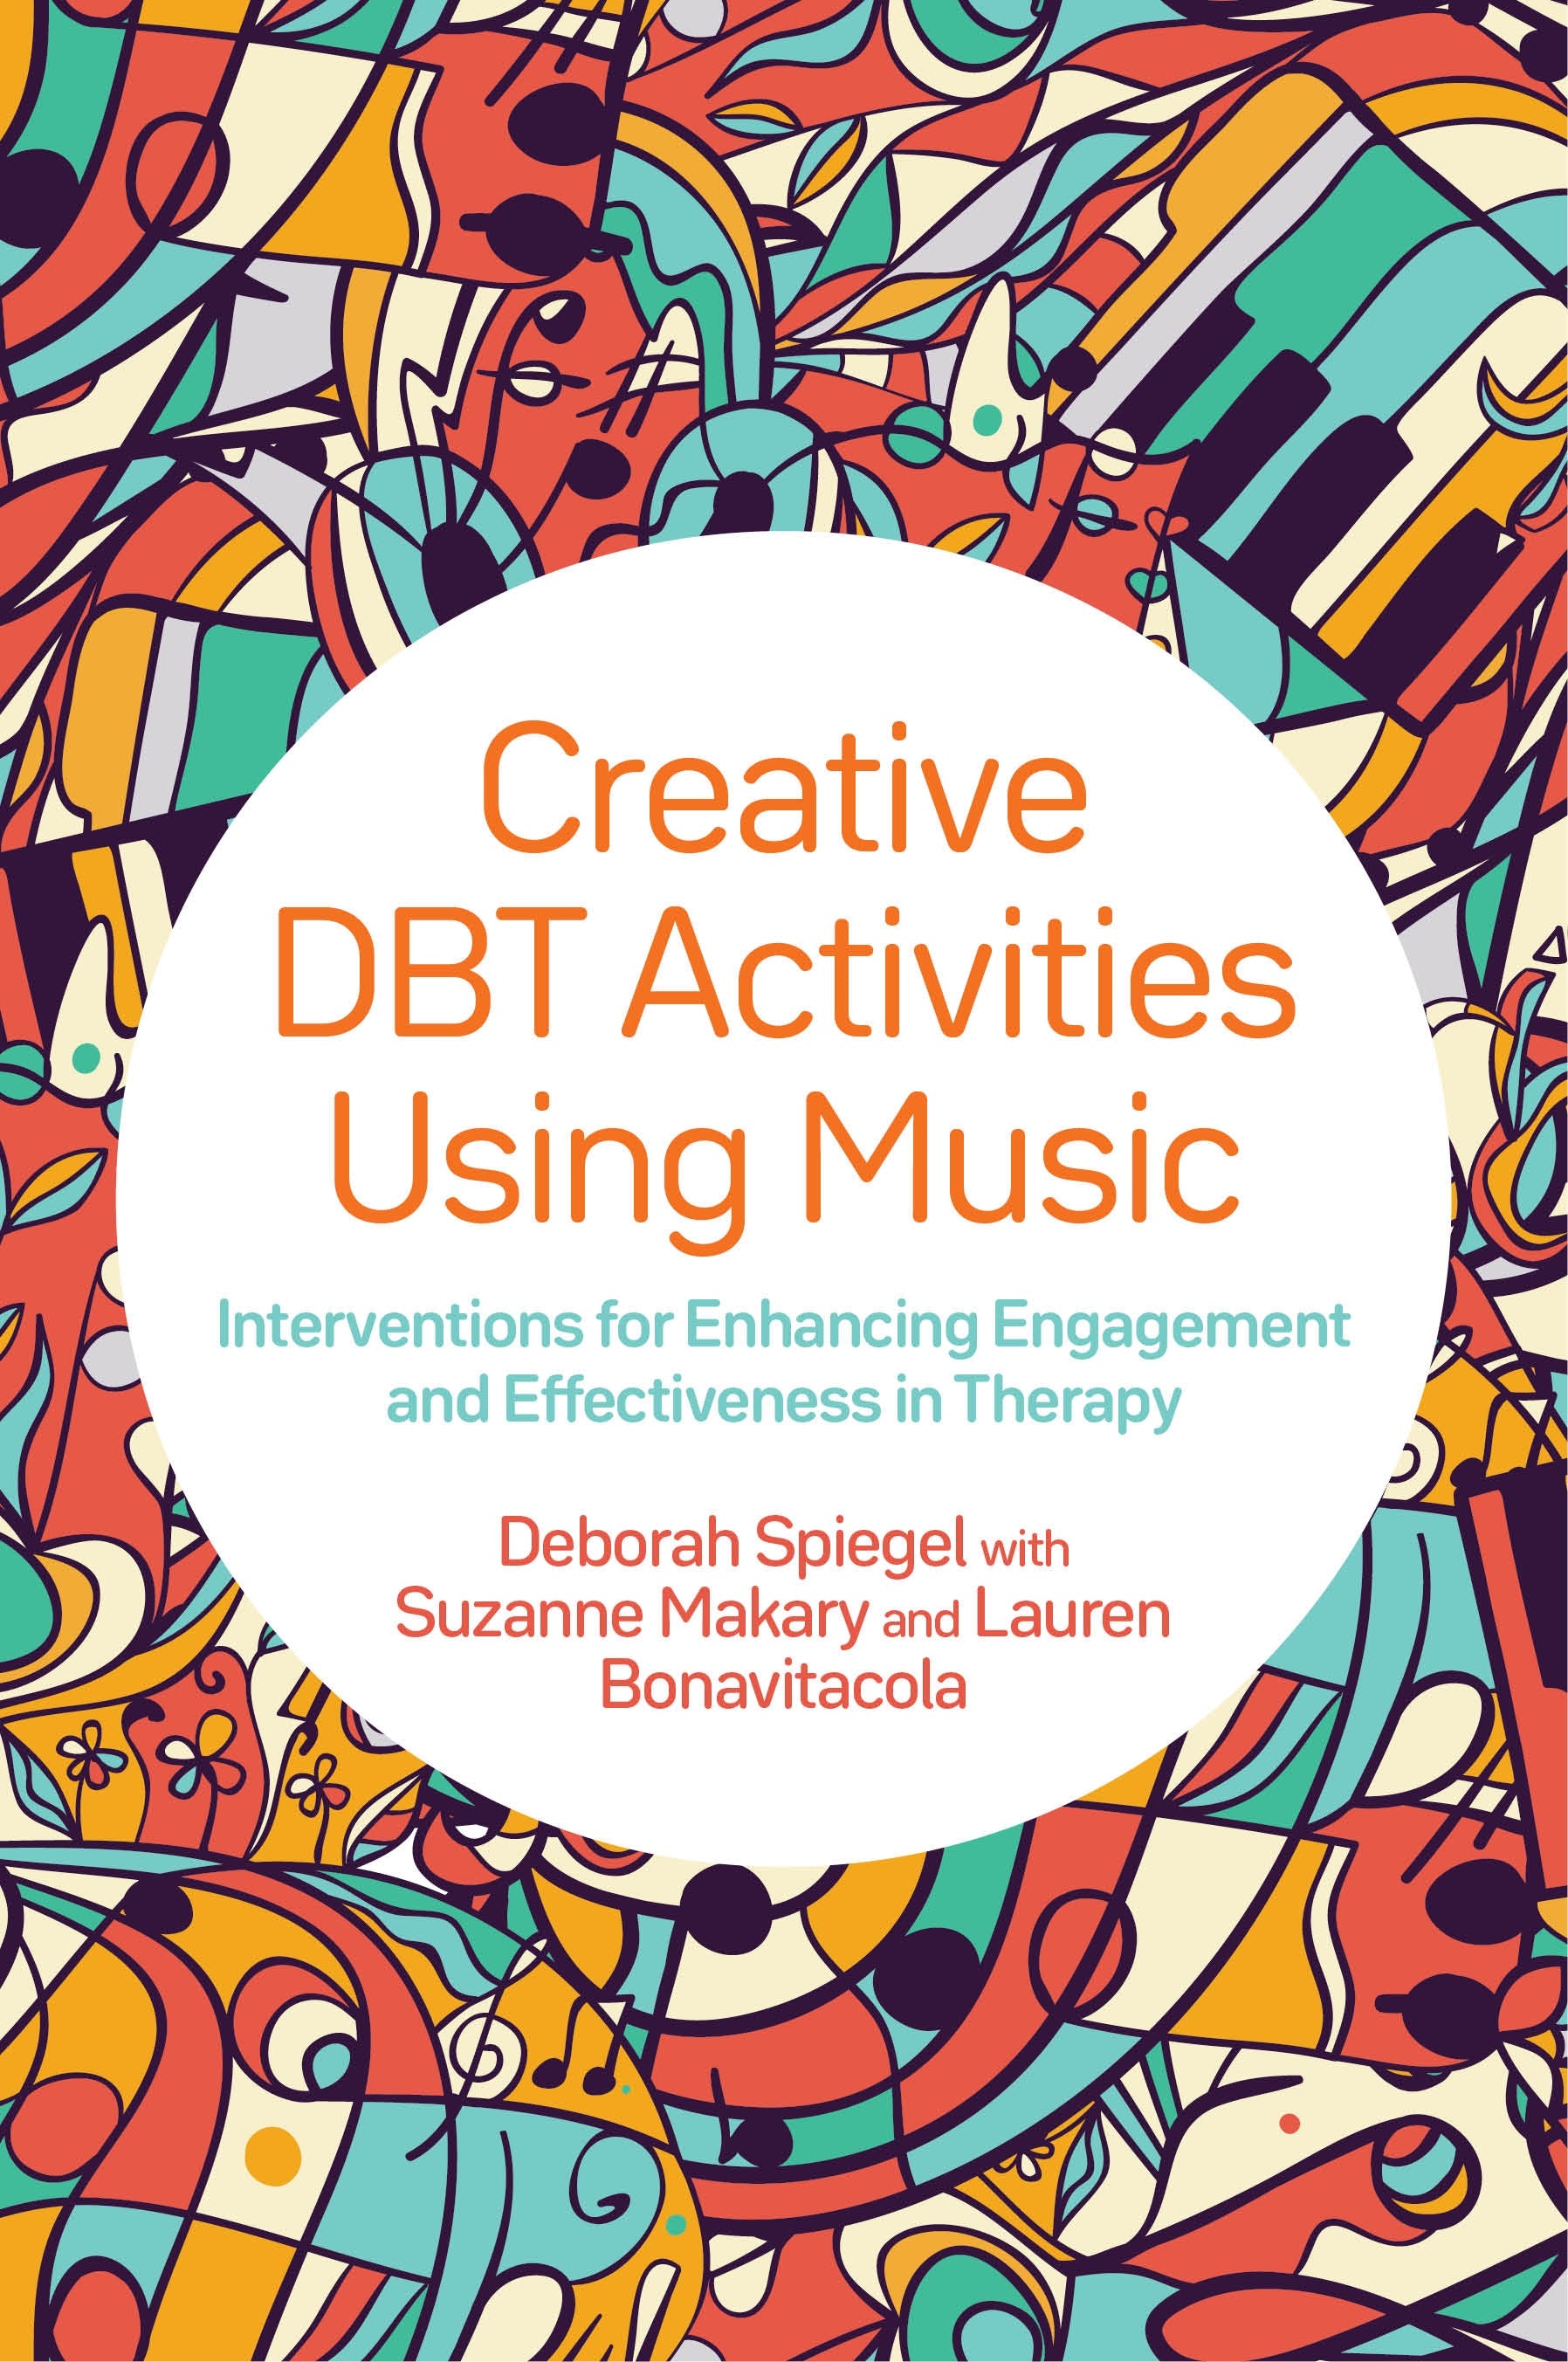 Creative DBT Activities Using Music by Deborah Spiegel, Suzanne Makary, Lauren Bonavitacola